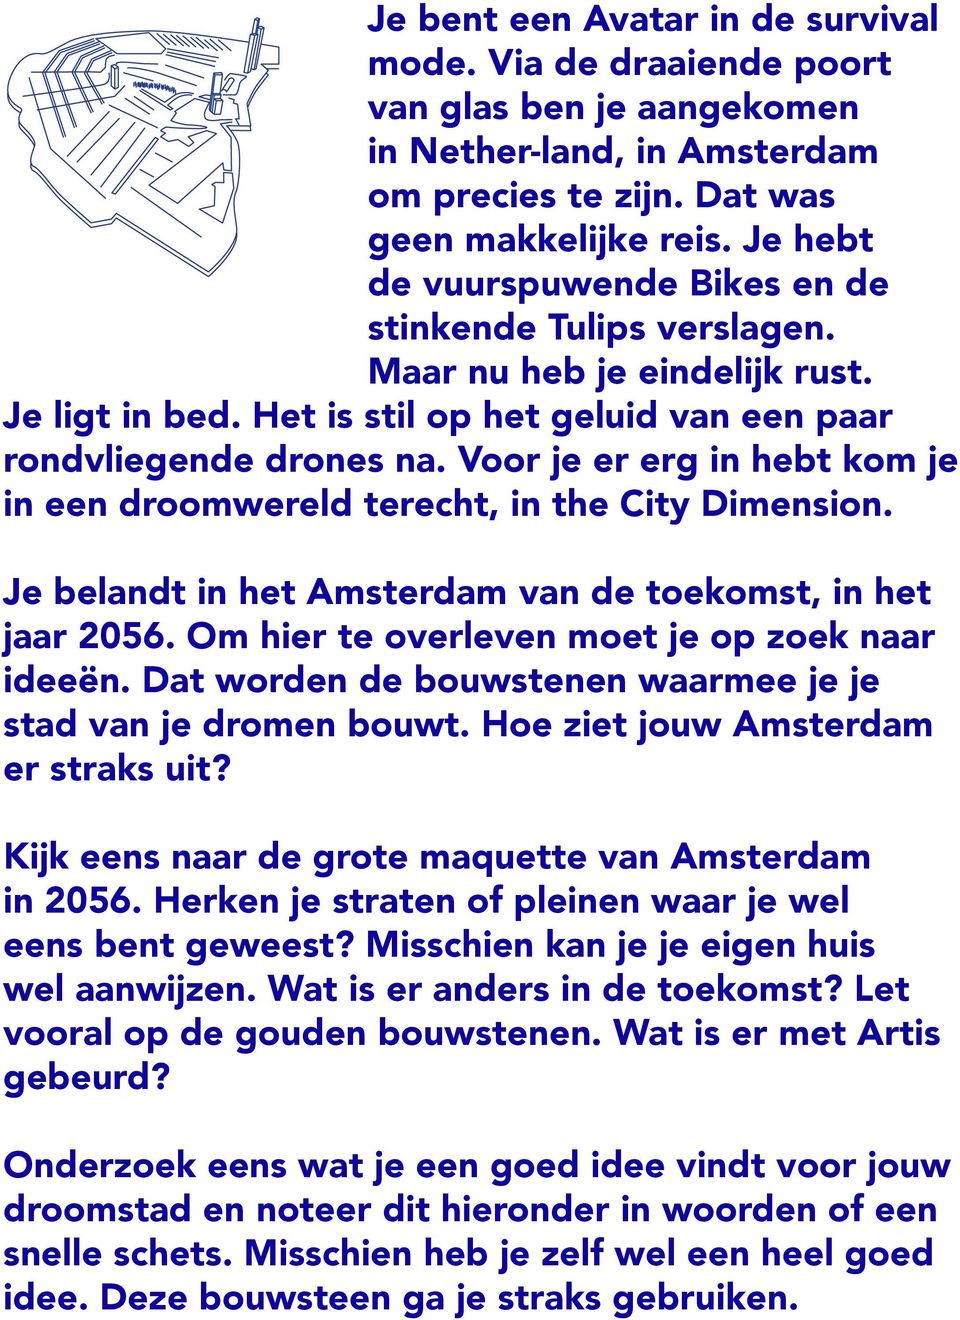 Voor je er erg in hebt kom je in een droomwereld terecht, in the City Dimension. Je belandt in het Amsterdam van de toekomst, in het jaar 2056. Om hier te overleven moet je op zoek naar ideeën.